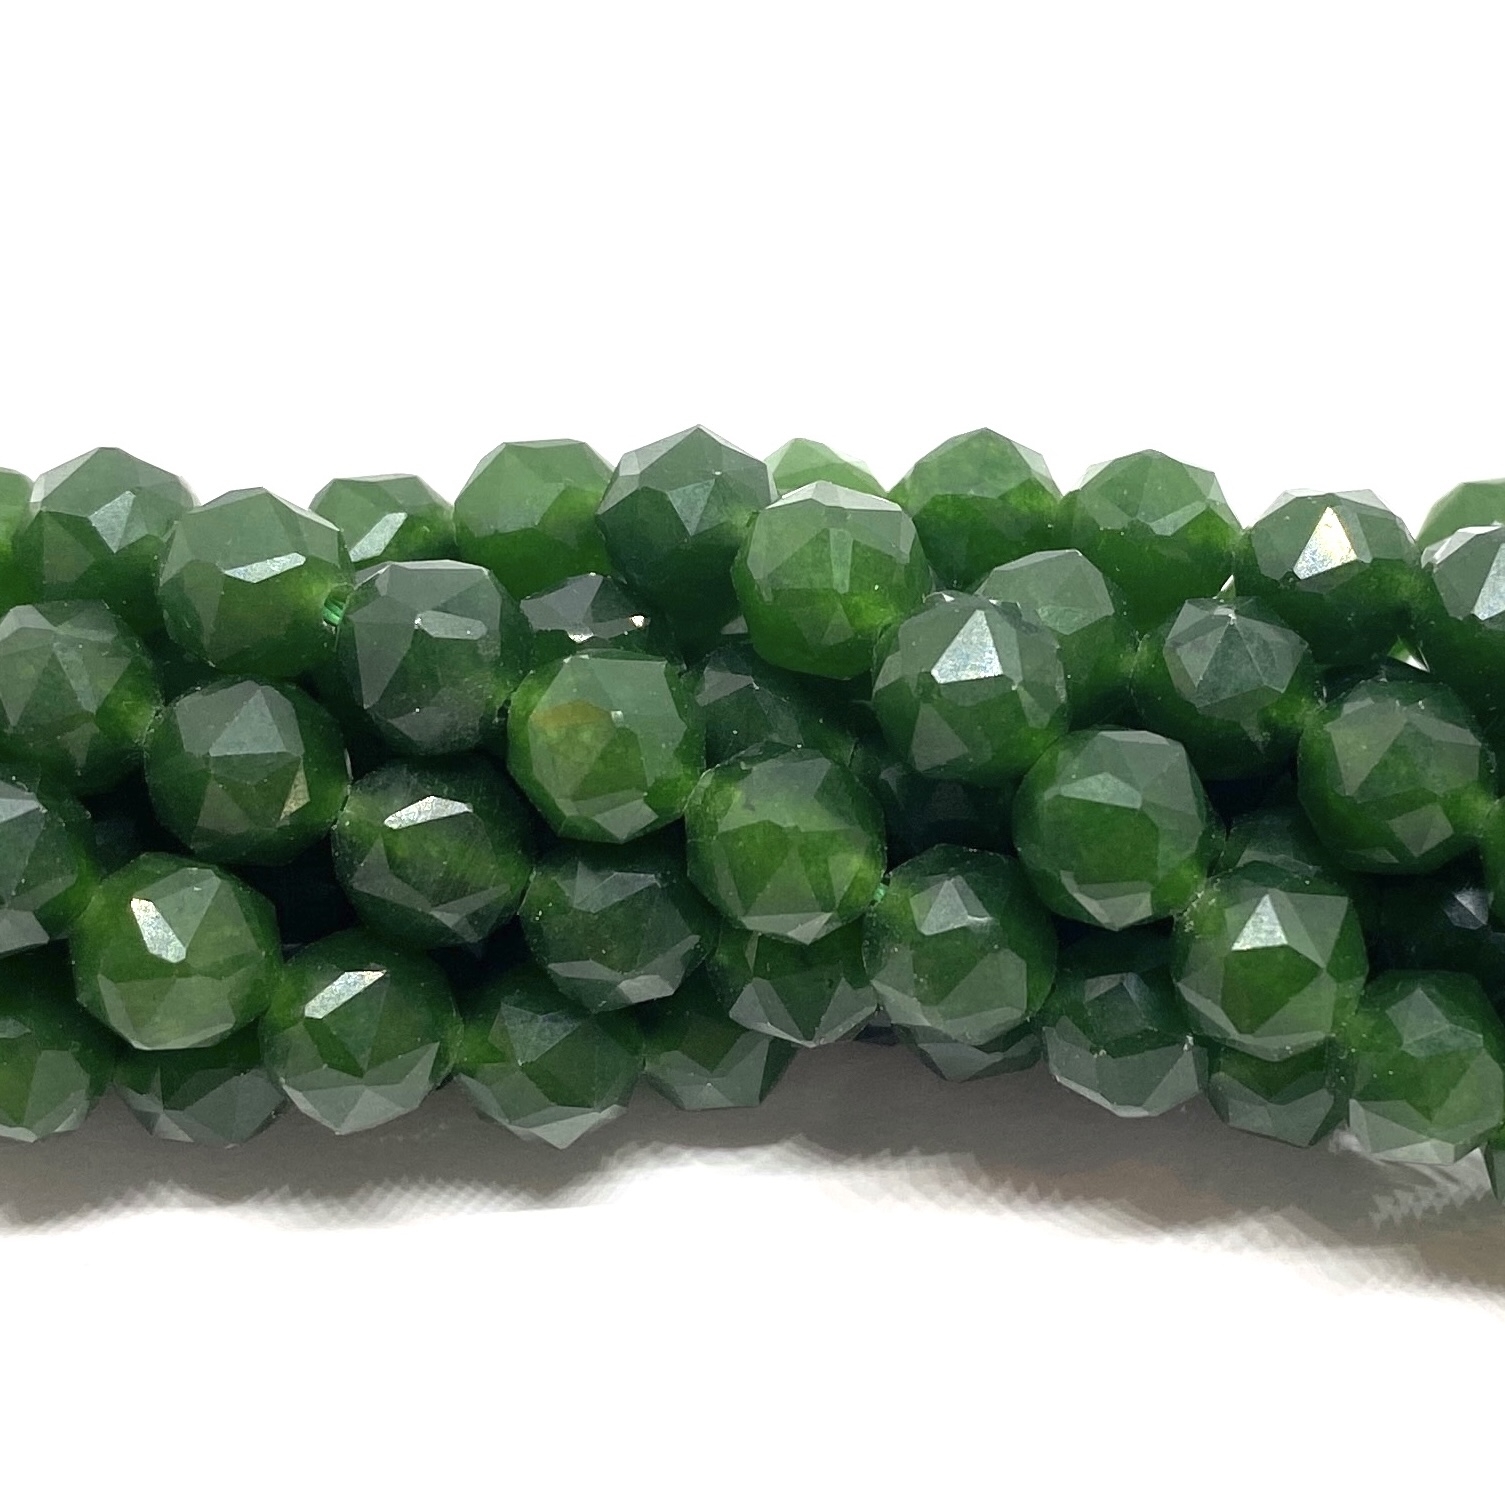 Taiwan jade